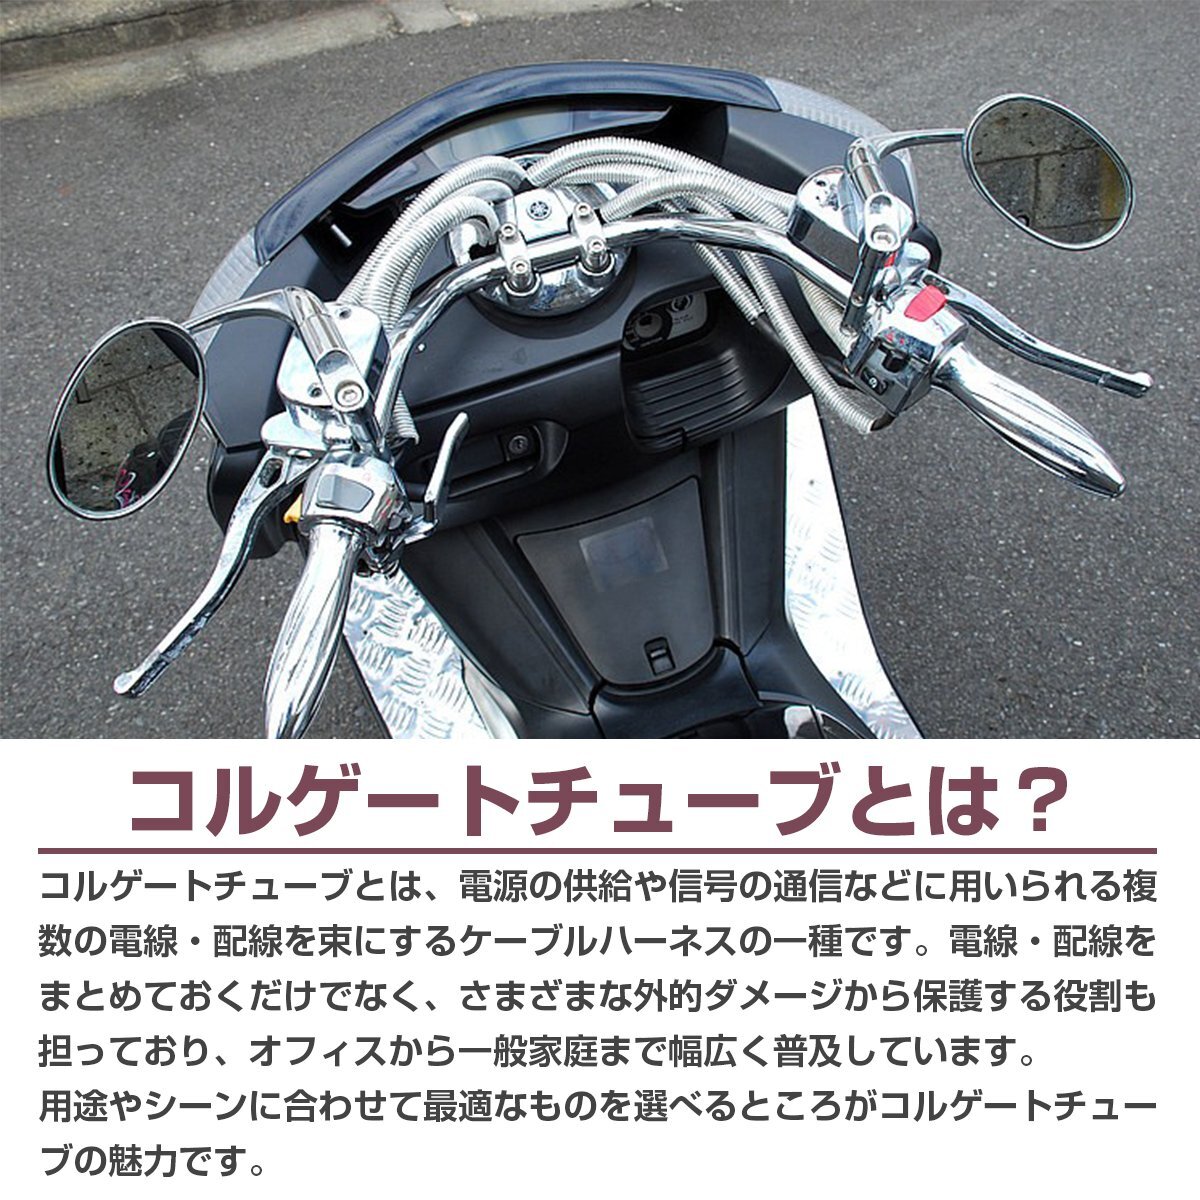 ... трубка   внутренний диаметр   10mm 10φ  длина  1000mm 100cm 1m  тормоз  шланг    проводка   код   custom   крышка   мотоцикл   серебро    серебристый 